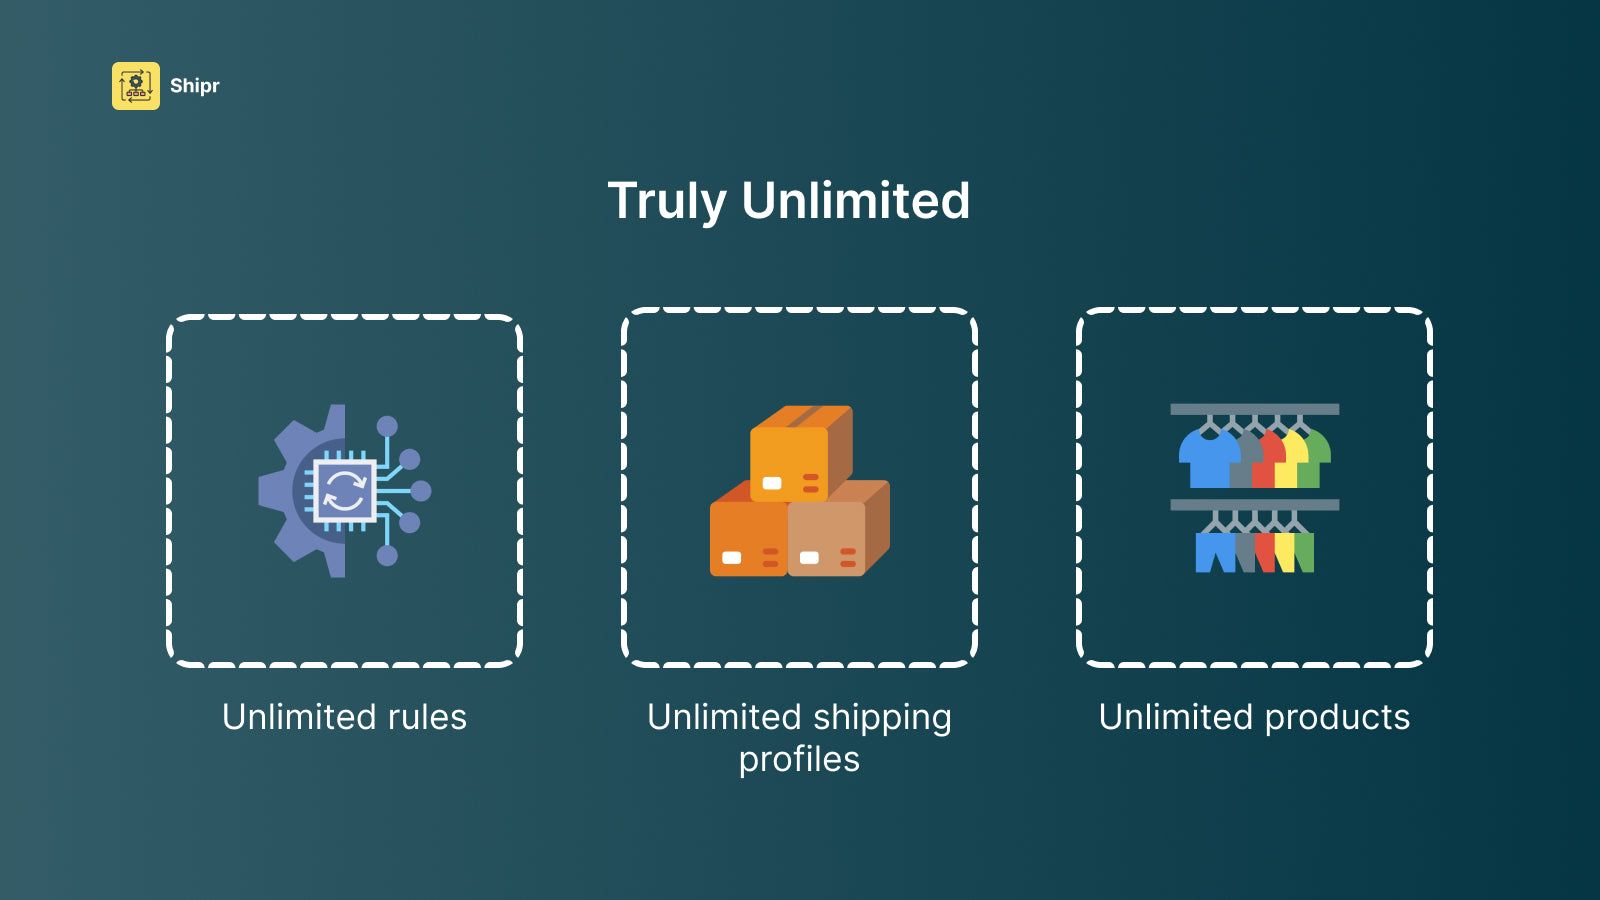 Unlimited rules, unlimited profiles, unlimited products